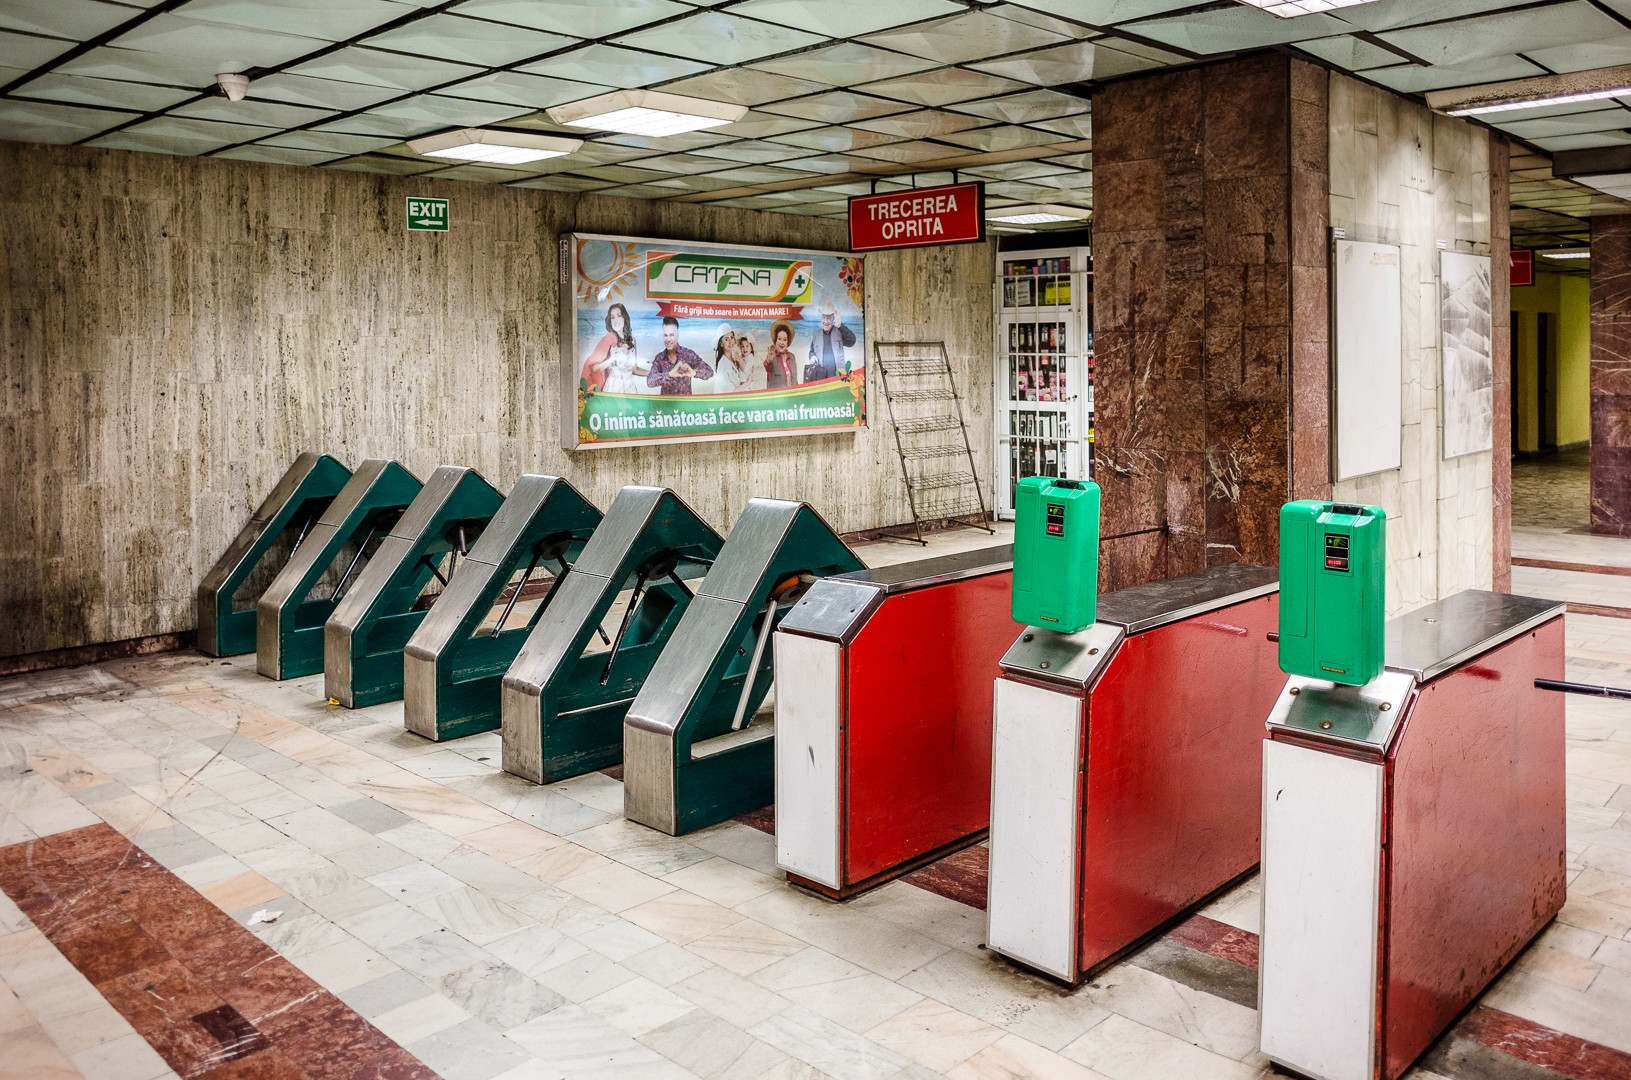 Turnicheții vechi - Stația de metrou Tineretului